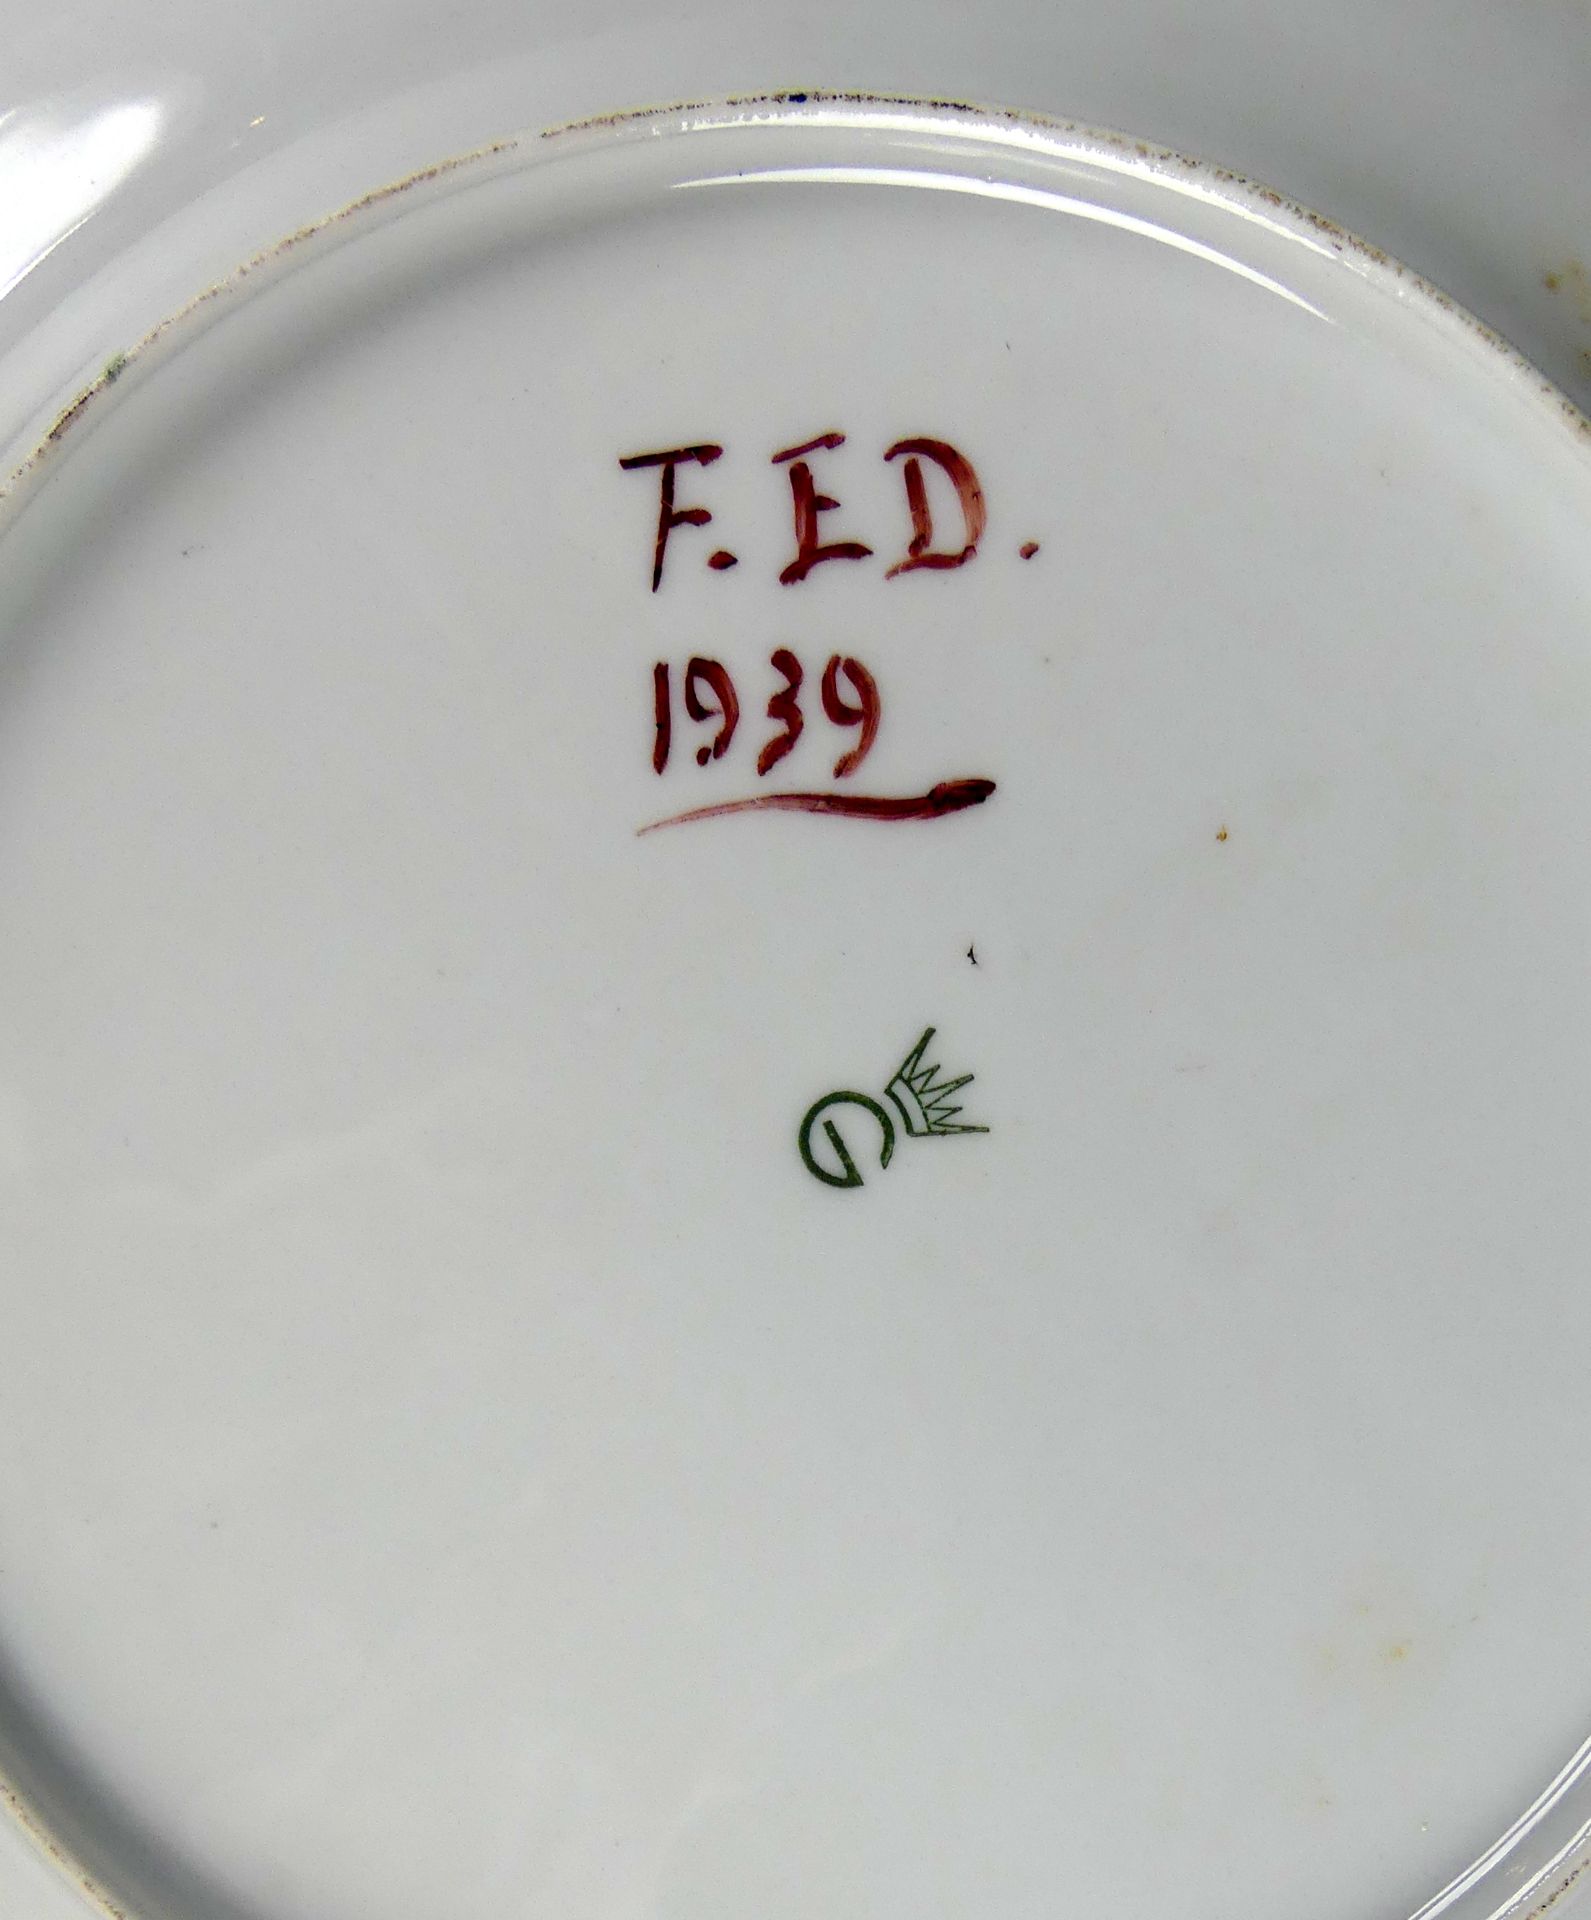 2 Keramikteller, versch. Dekore, rücks. Bez. FED 1939, Dm. ca. 24 cm - Bild 2 aus 2